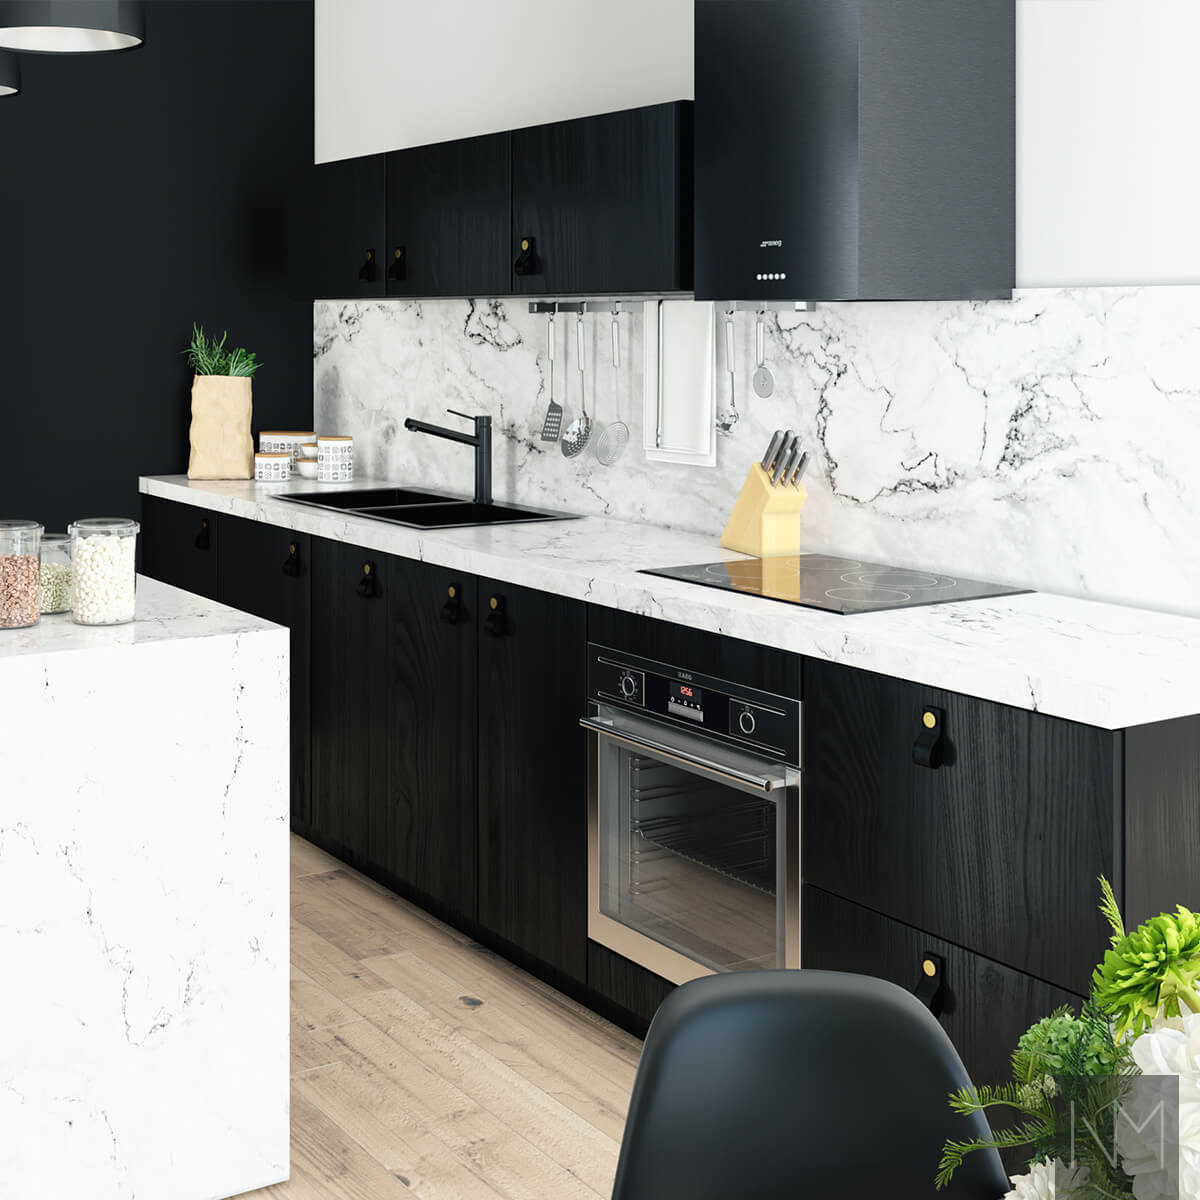 Keukendeuren in Nordic design. Zwarte as - gekleurd. Handgreep Loop in zwart leer met koperen knop